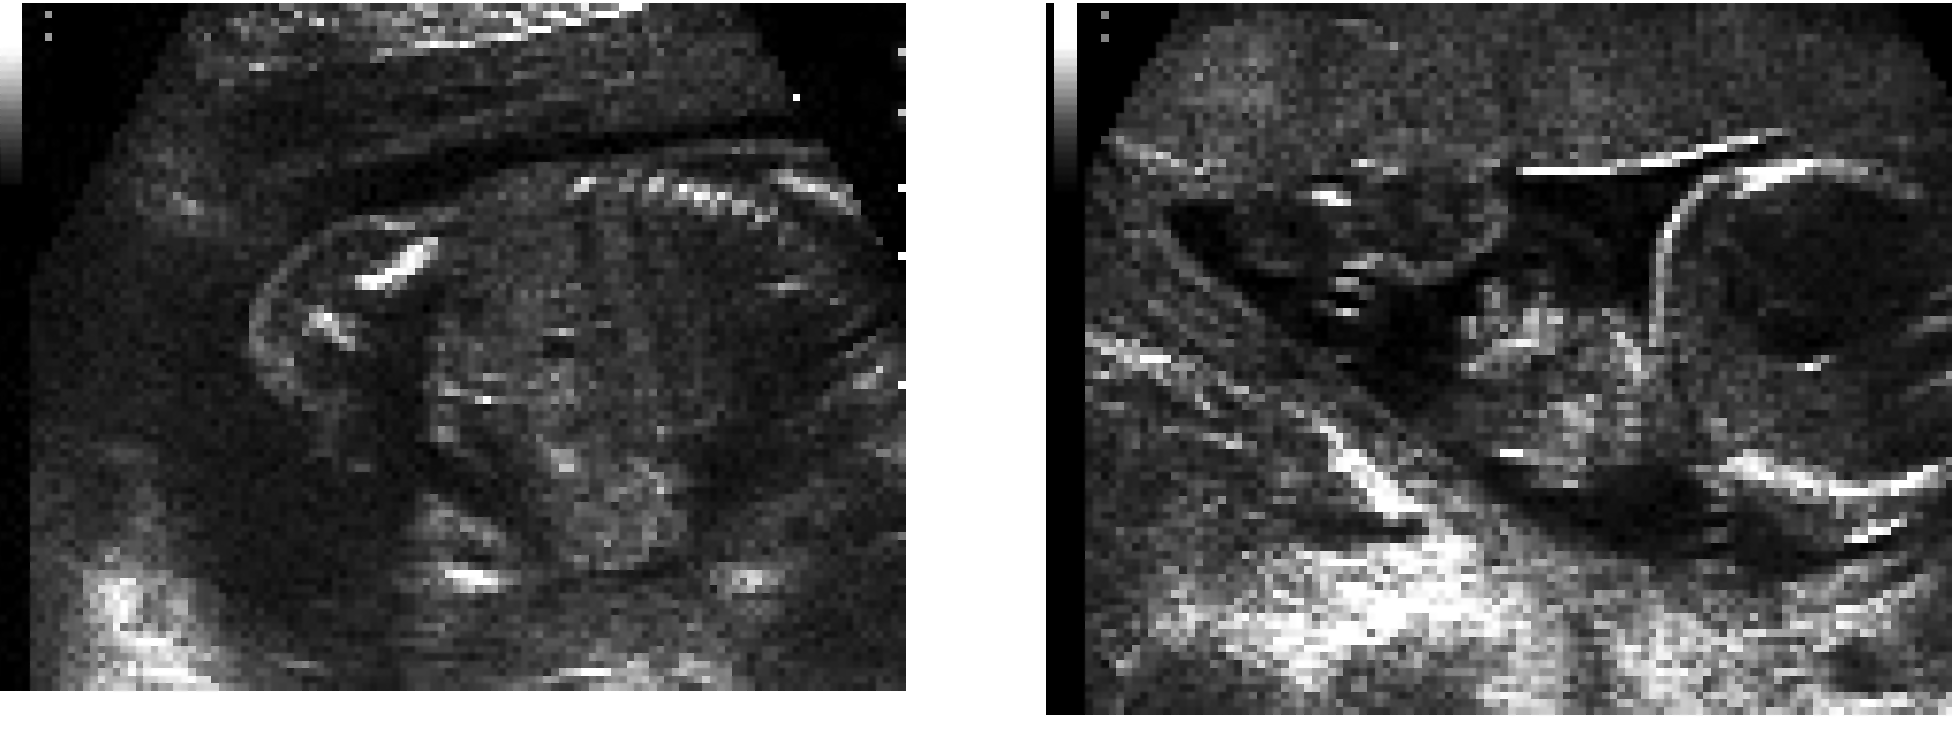 Ομφαλοκήλη Αραμπατζής και συν. Εικόνα 6: Υπερηχογραφική απεικόνιση γαστρόσχισης σε έμβρυο 19 εβδομάδων κύησης (εγκάρσια και επιμήκης τομή) νται απο πόλυάμνιο ή σπανιότερα ολιγάμνιο.